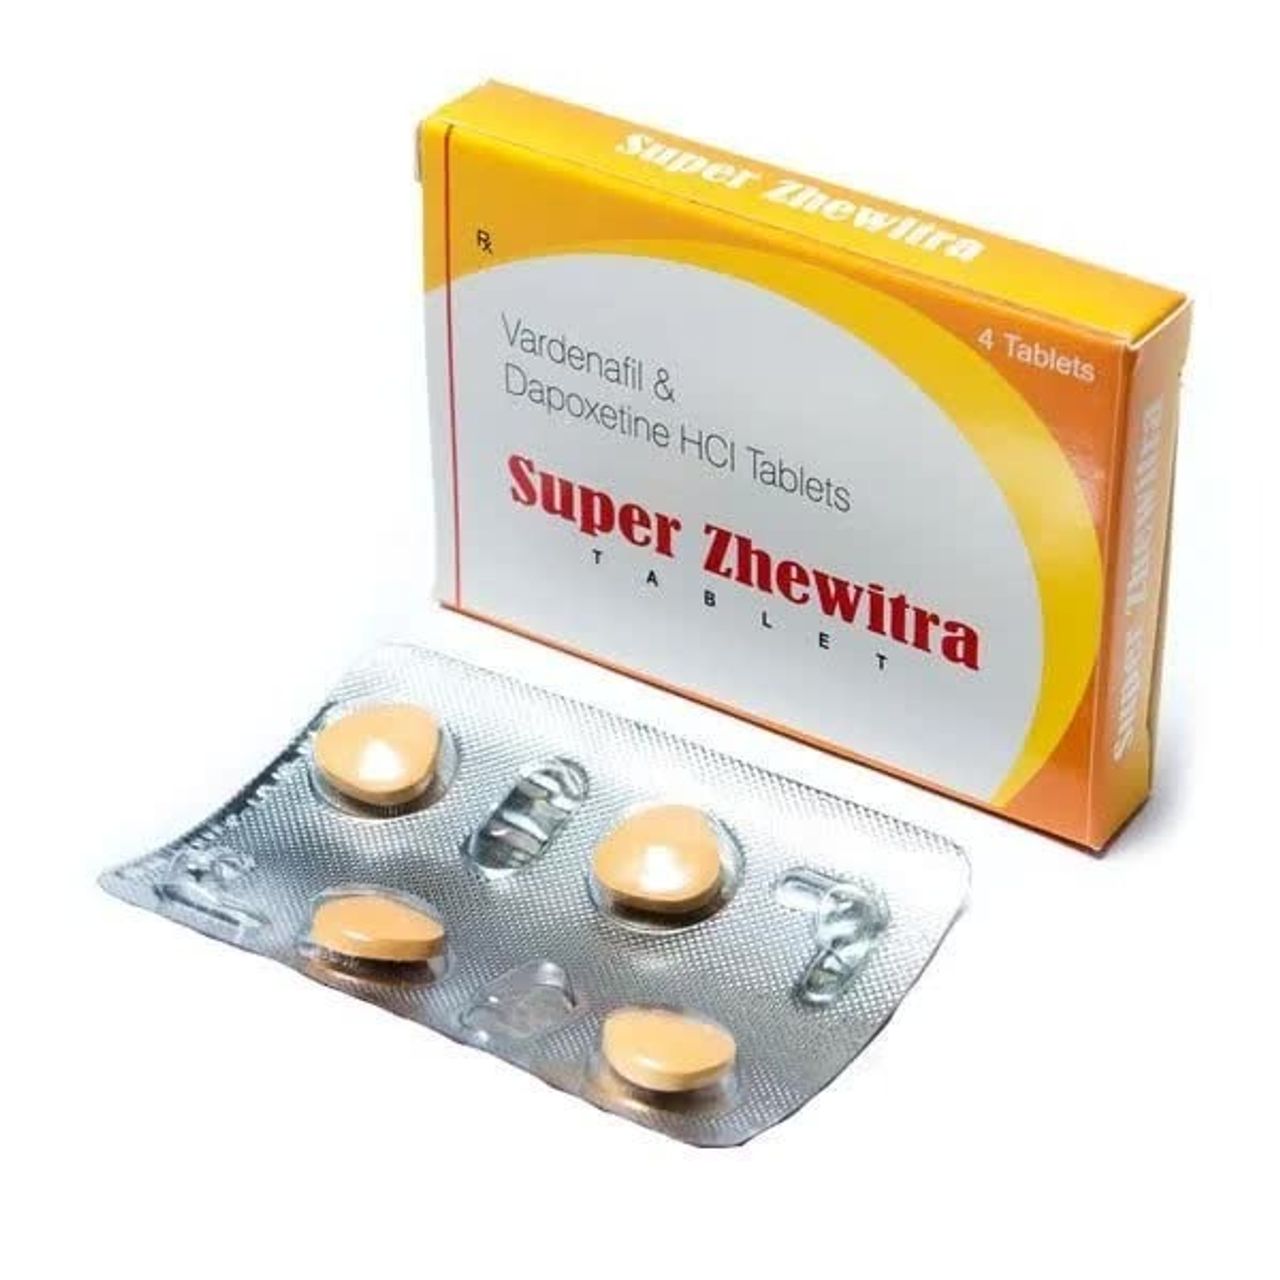 superzhewitraa